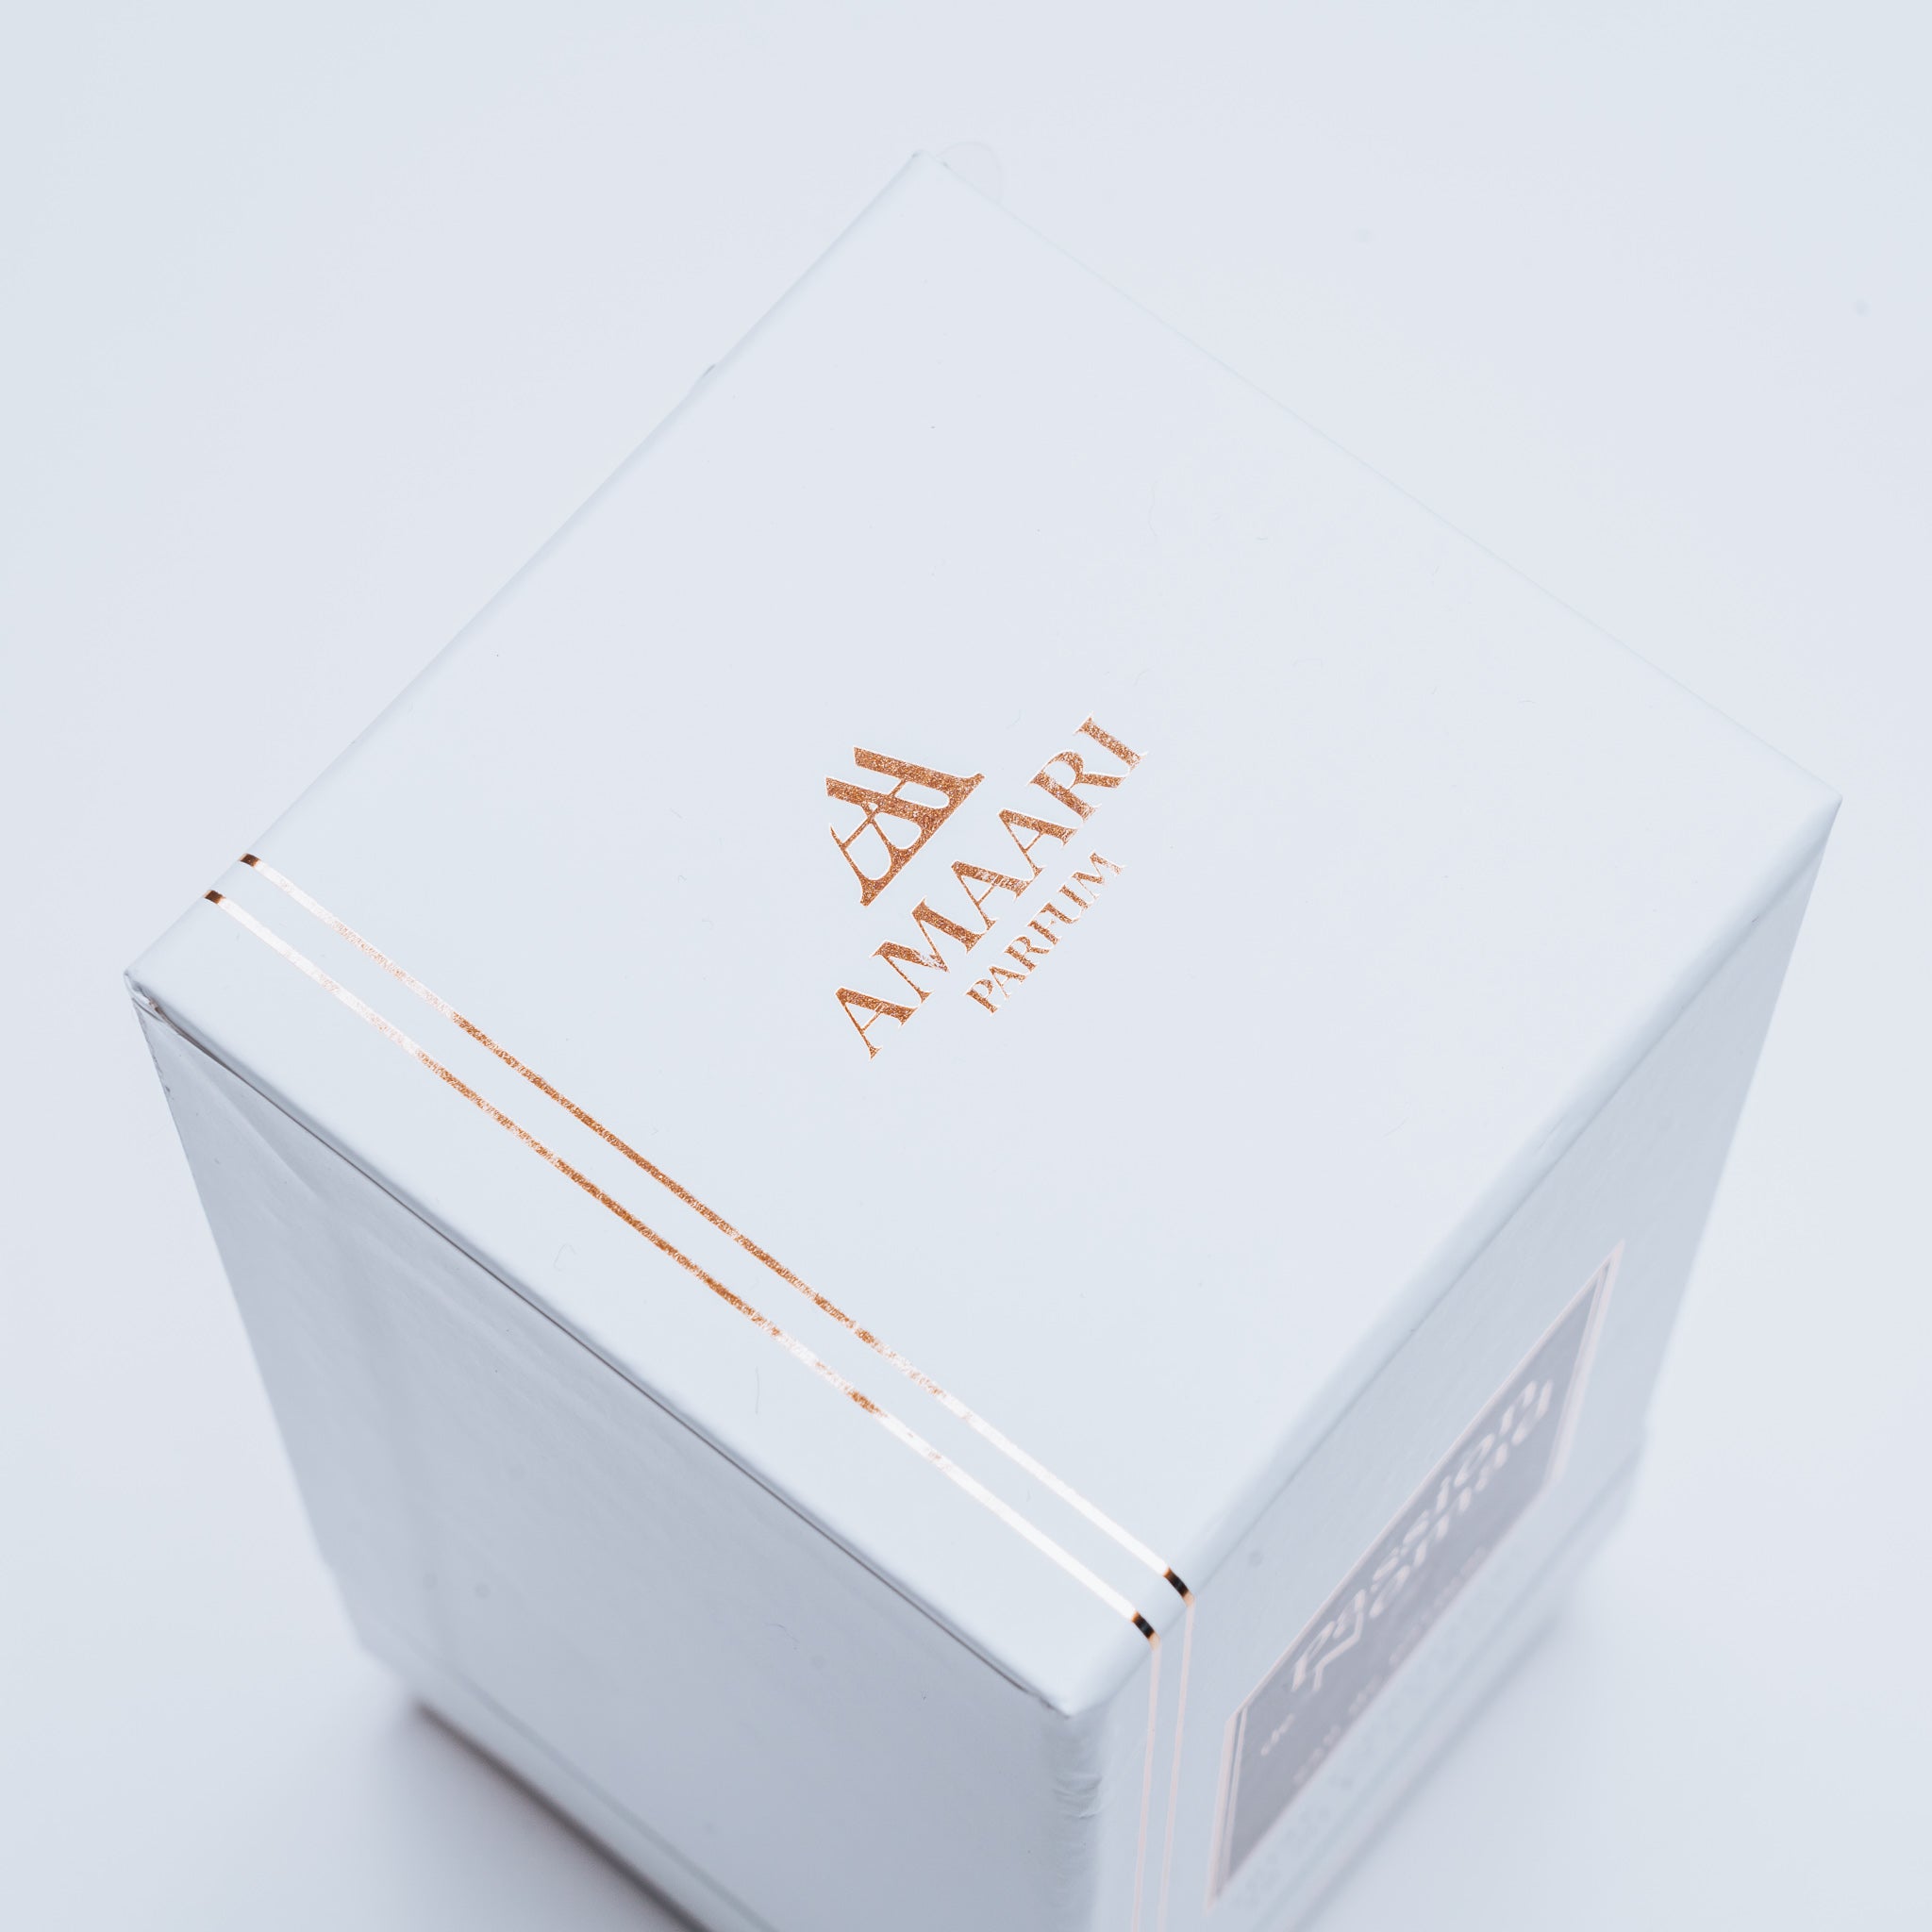 Amaari Parfum Passion de Nomade, inspired by Ombre Nomad Louis Vuitton - 50ml - Amaari Parfum